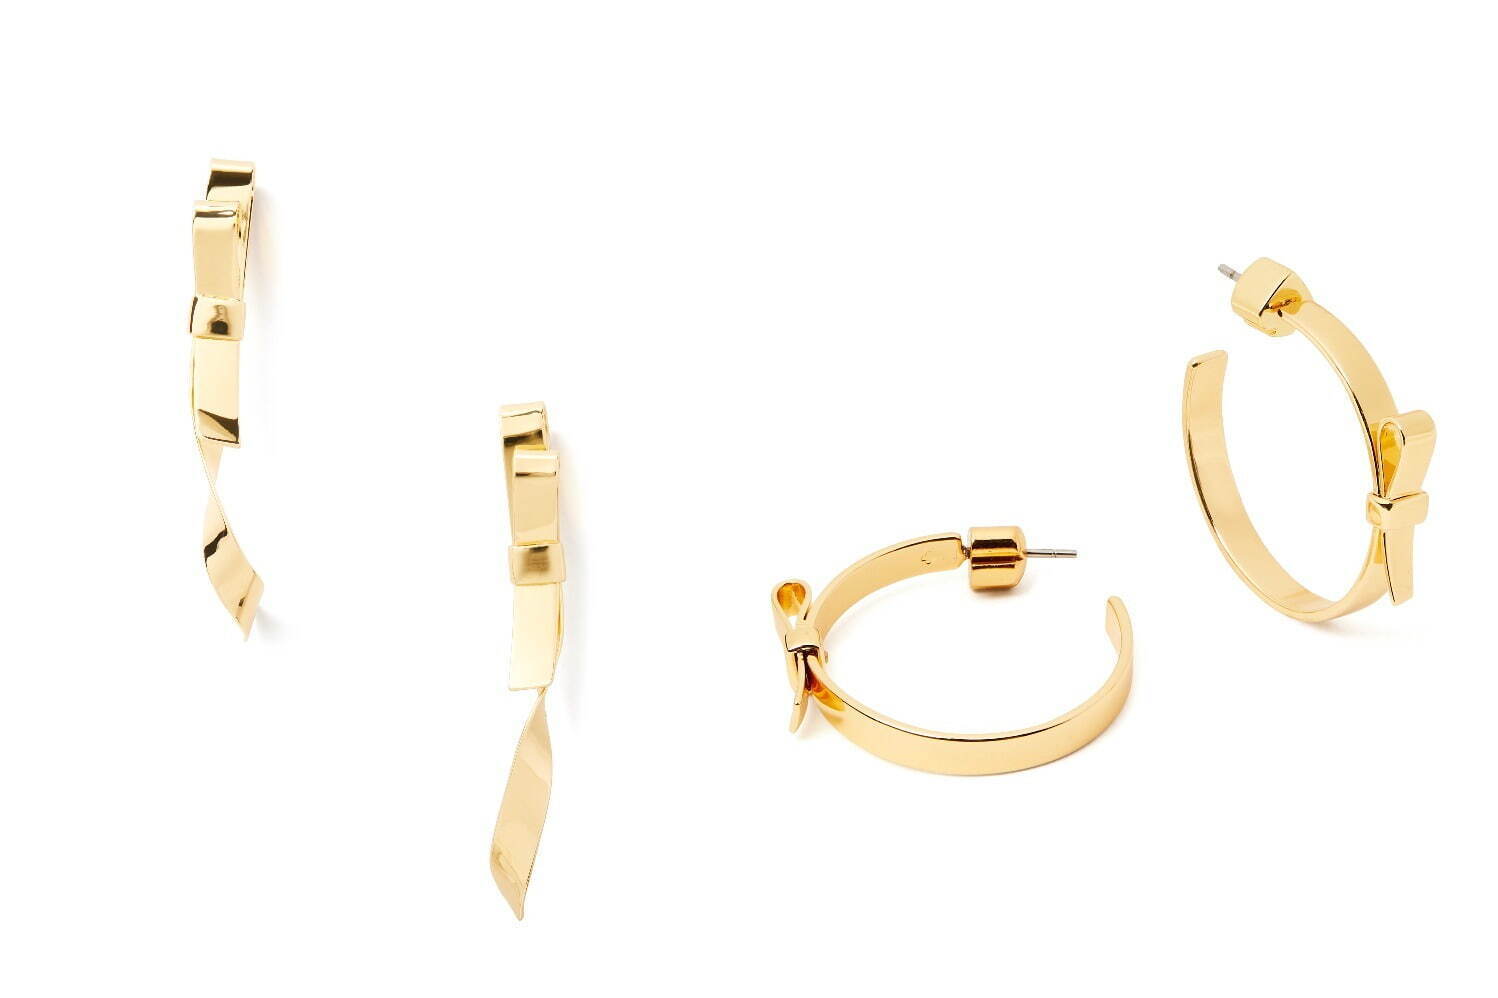 左から)bow linear earrings 17,600円、bow hoops 13,200円
※2021年12月上旬発売予定。